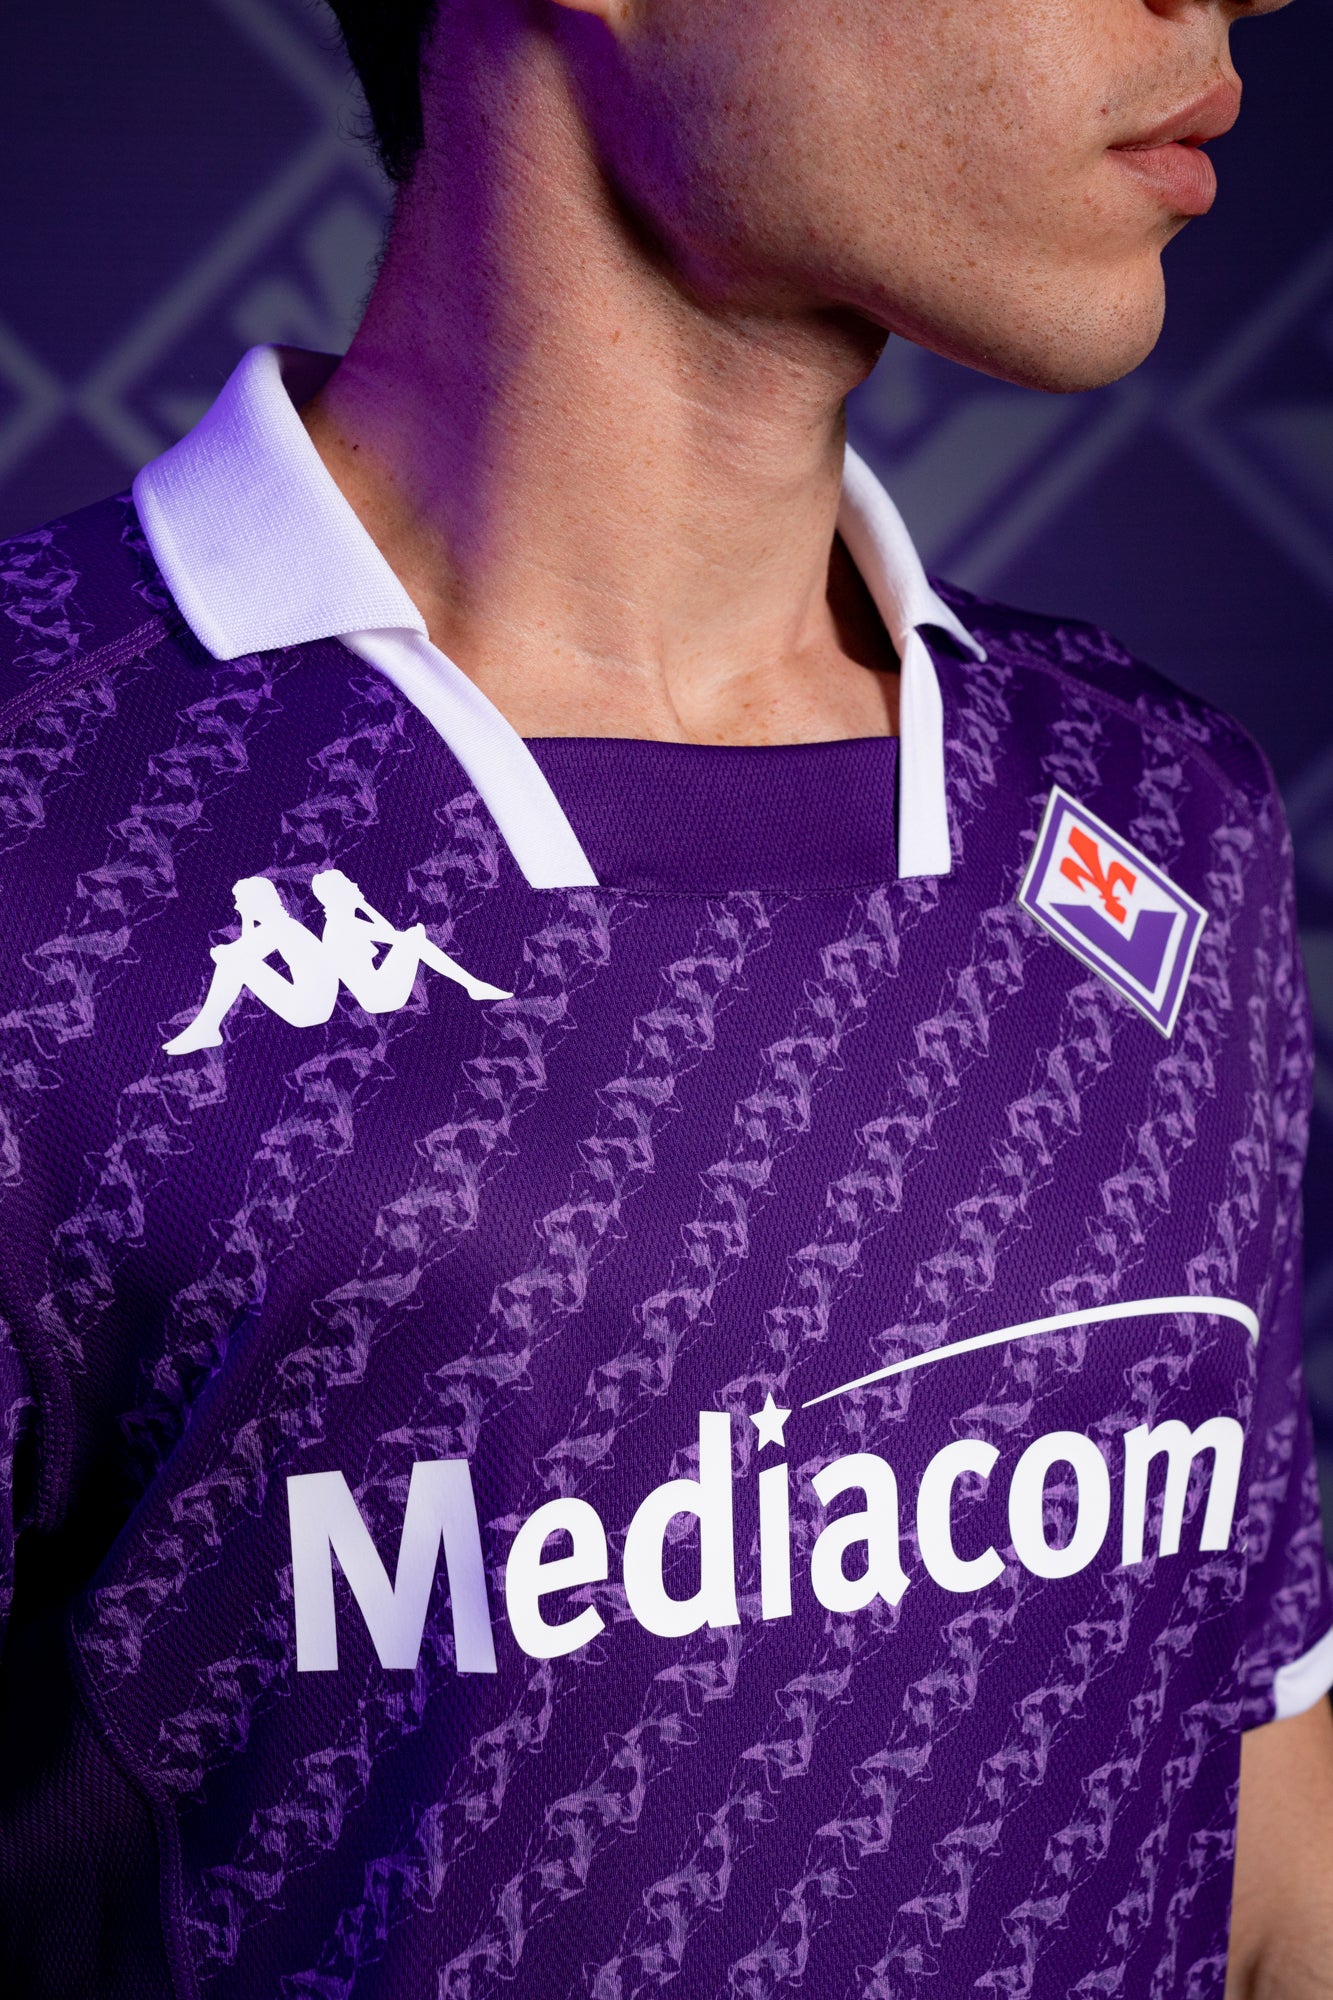 La nuova maglia casalinga della Fiorentina